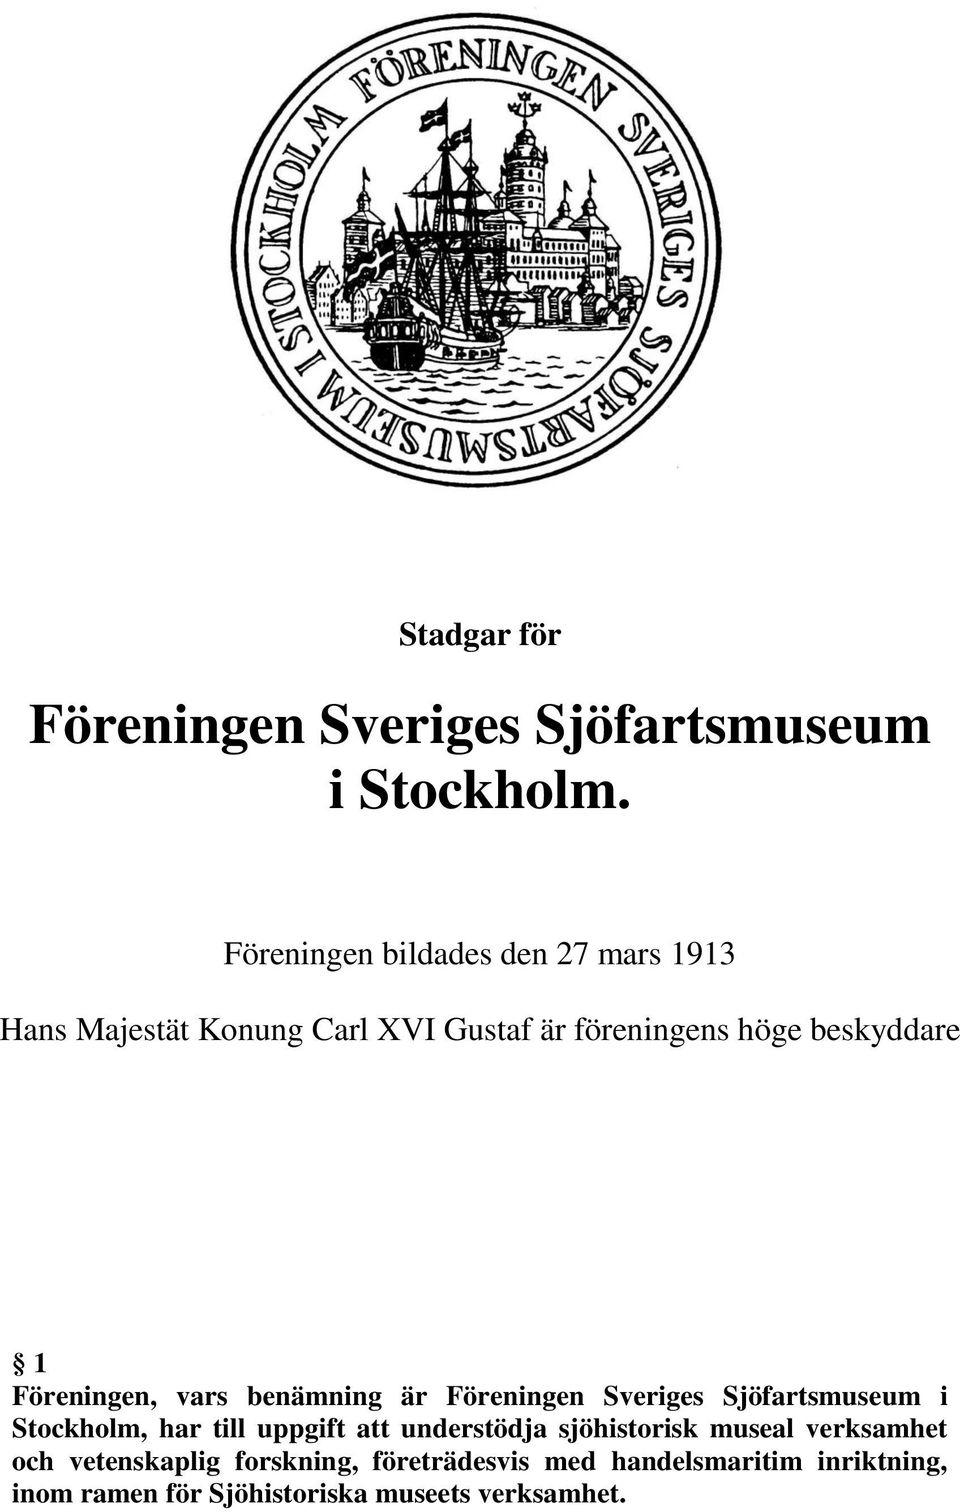 Föreningen, vars benämning är Föreningen Sveriges Sjöfartsmuseum i Stockholm, har till uppgift att